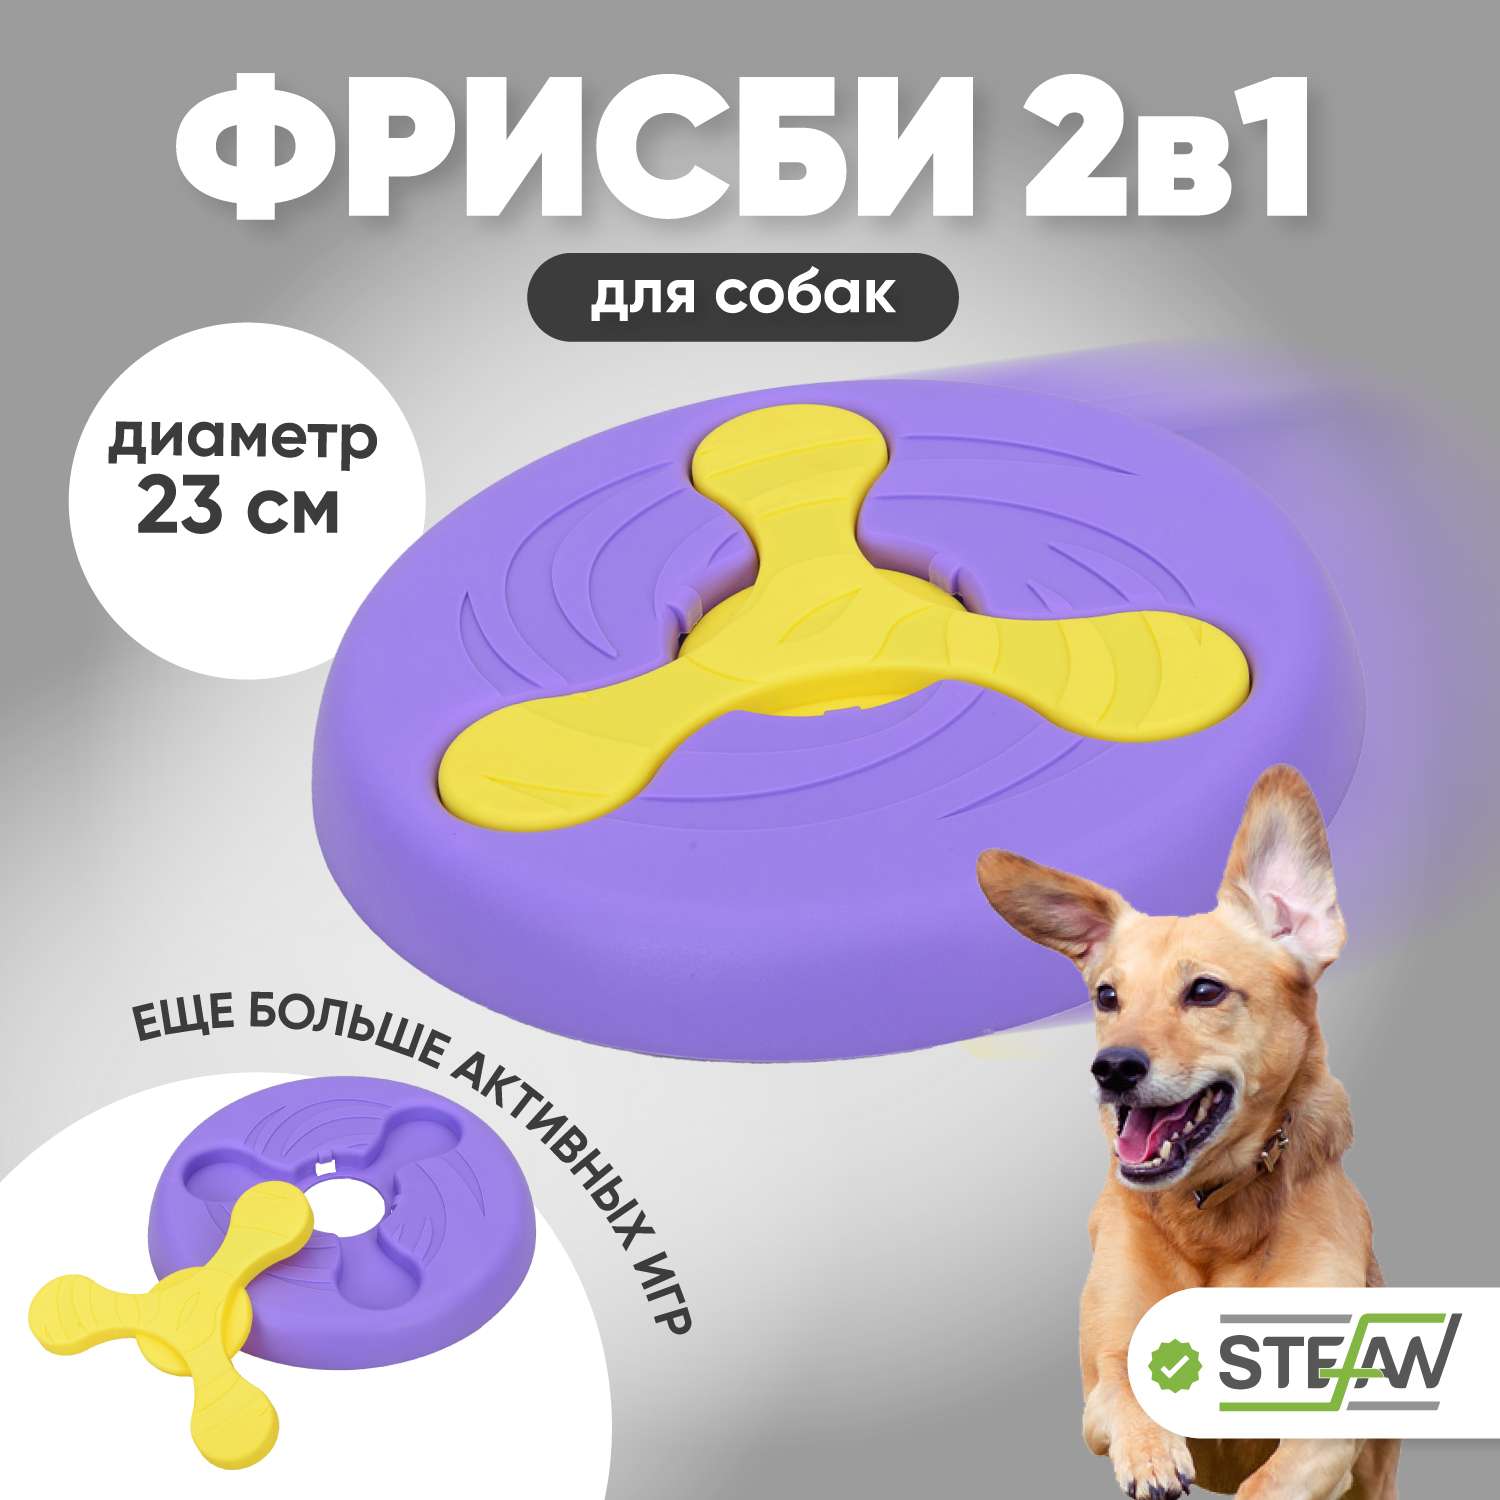 Игрушка для собак Stefan фрисби 2в1 летающая тарелка - фото 1